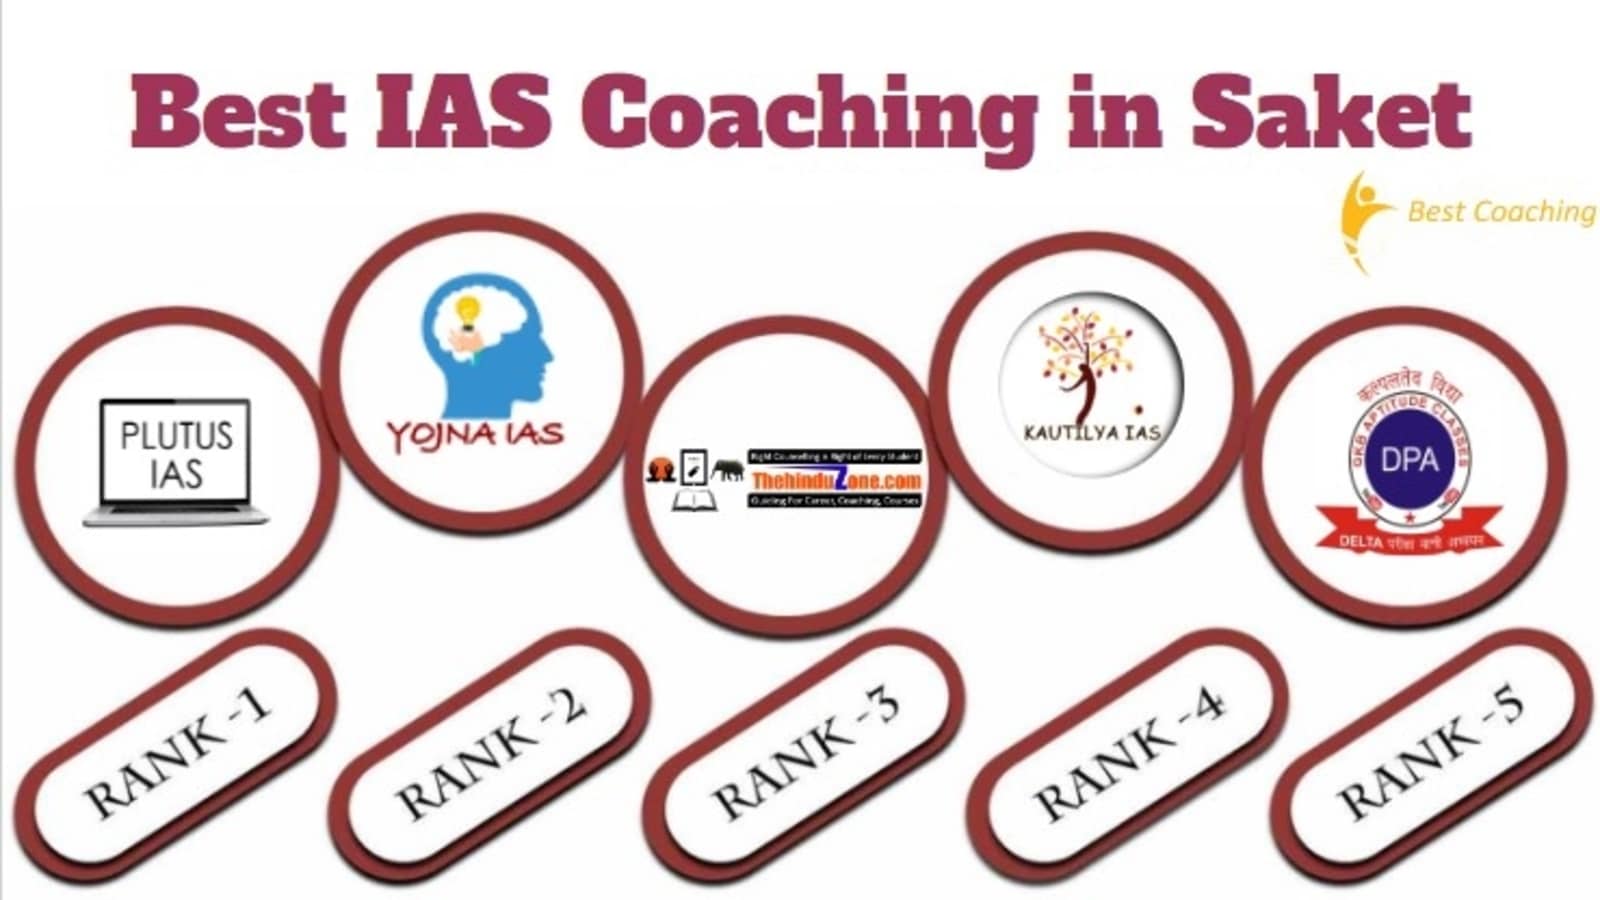 Best IAS Coaching in Saket